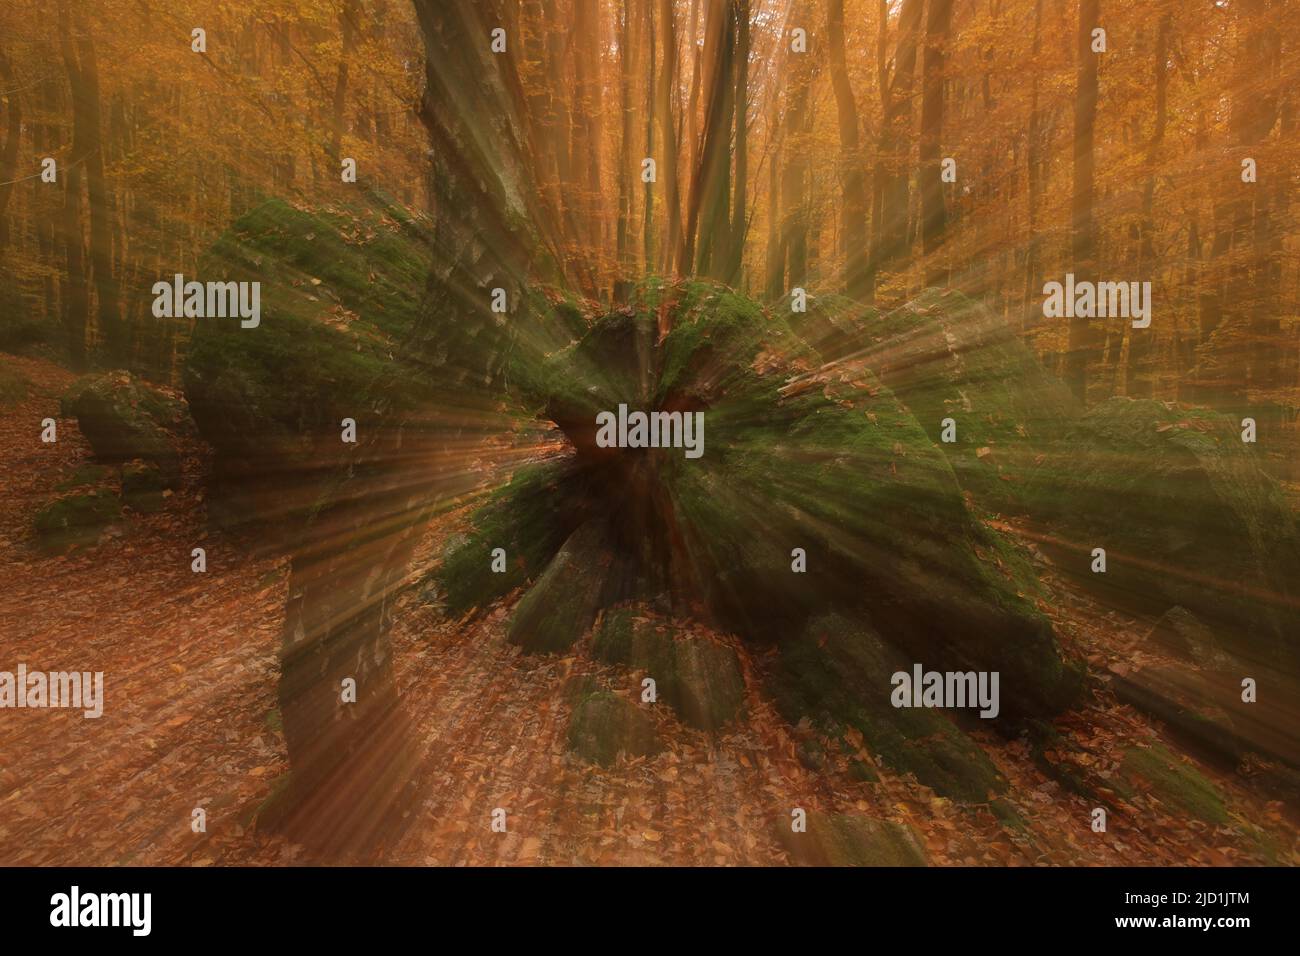 Photo art by zoom effetto in autunno foresta con tronco di betulla piegato, rocce e foglie in autunno, Eppstein, Taunus, Assia, Germania Foto Stock